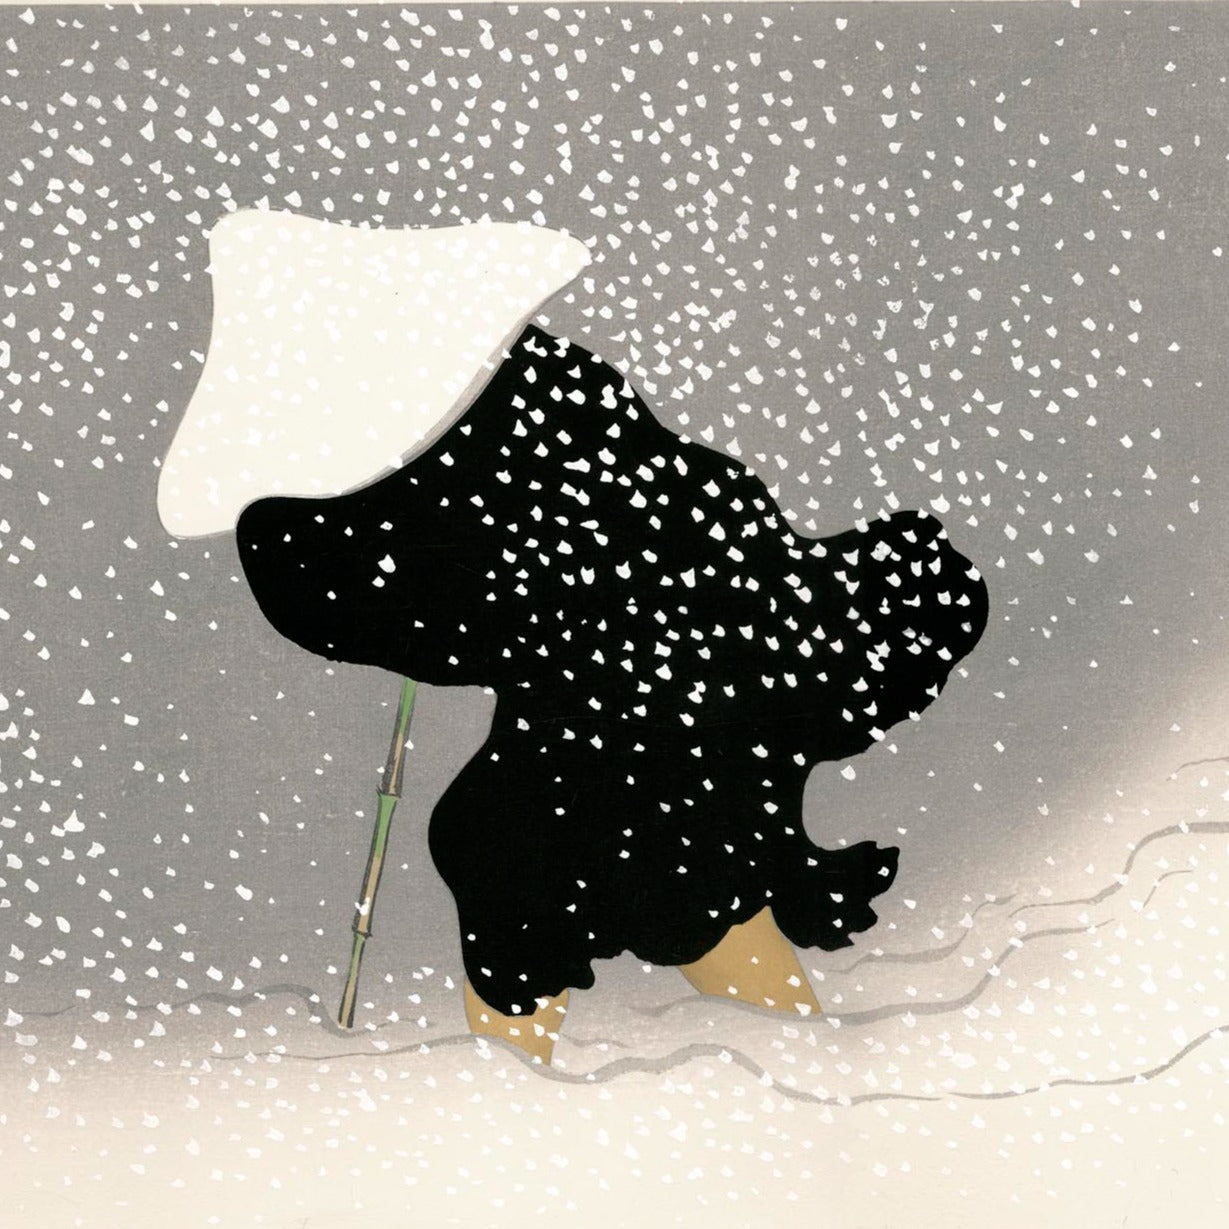 estampe japonaise kamisaka sekka tourbillon neige Un moine habillé d’un manteau noir et d’un couvre-chef blanc, s’aidant d’une canne de bambou, traverse une tempête de neige